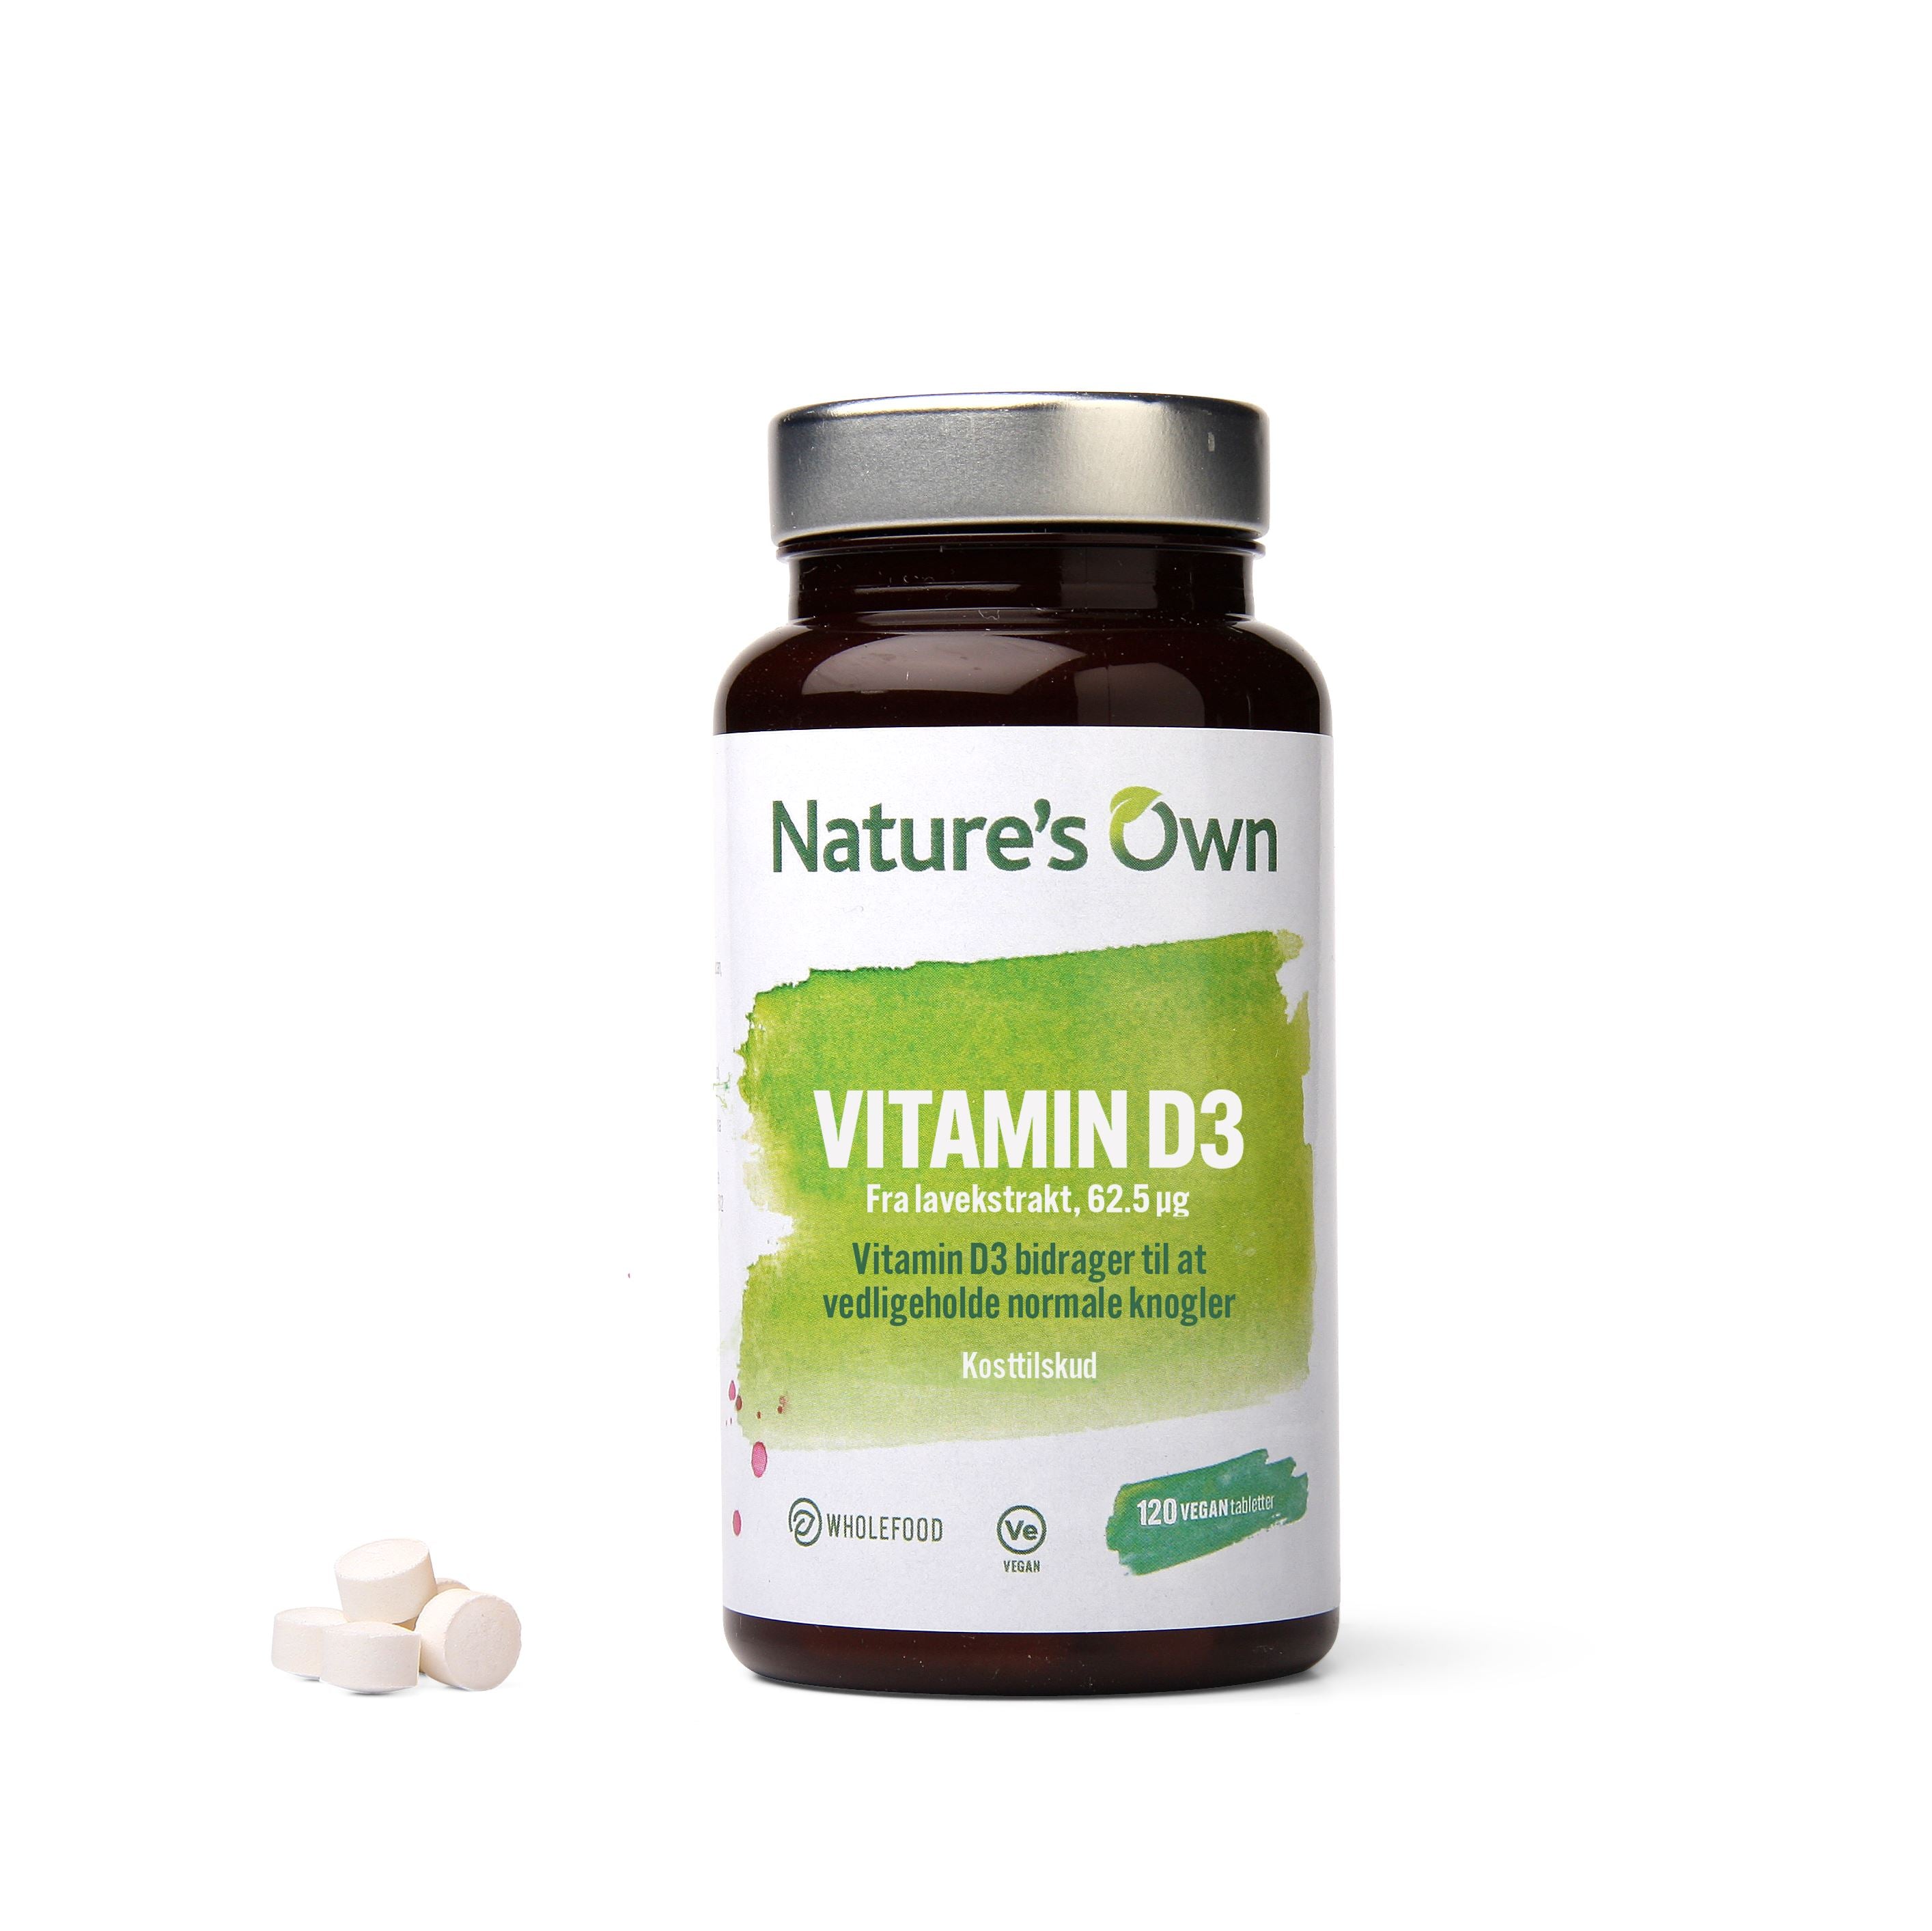 Se Natures Own - Nature's Own Vitamin D3 Vegan Udvundet Af Lavekstrakt - 120 Stk hos Suztain